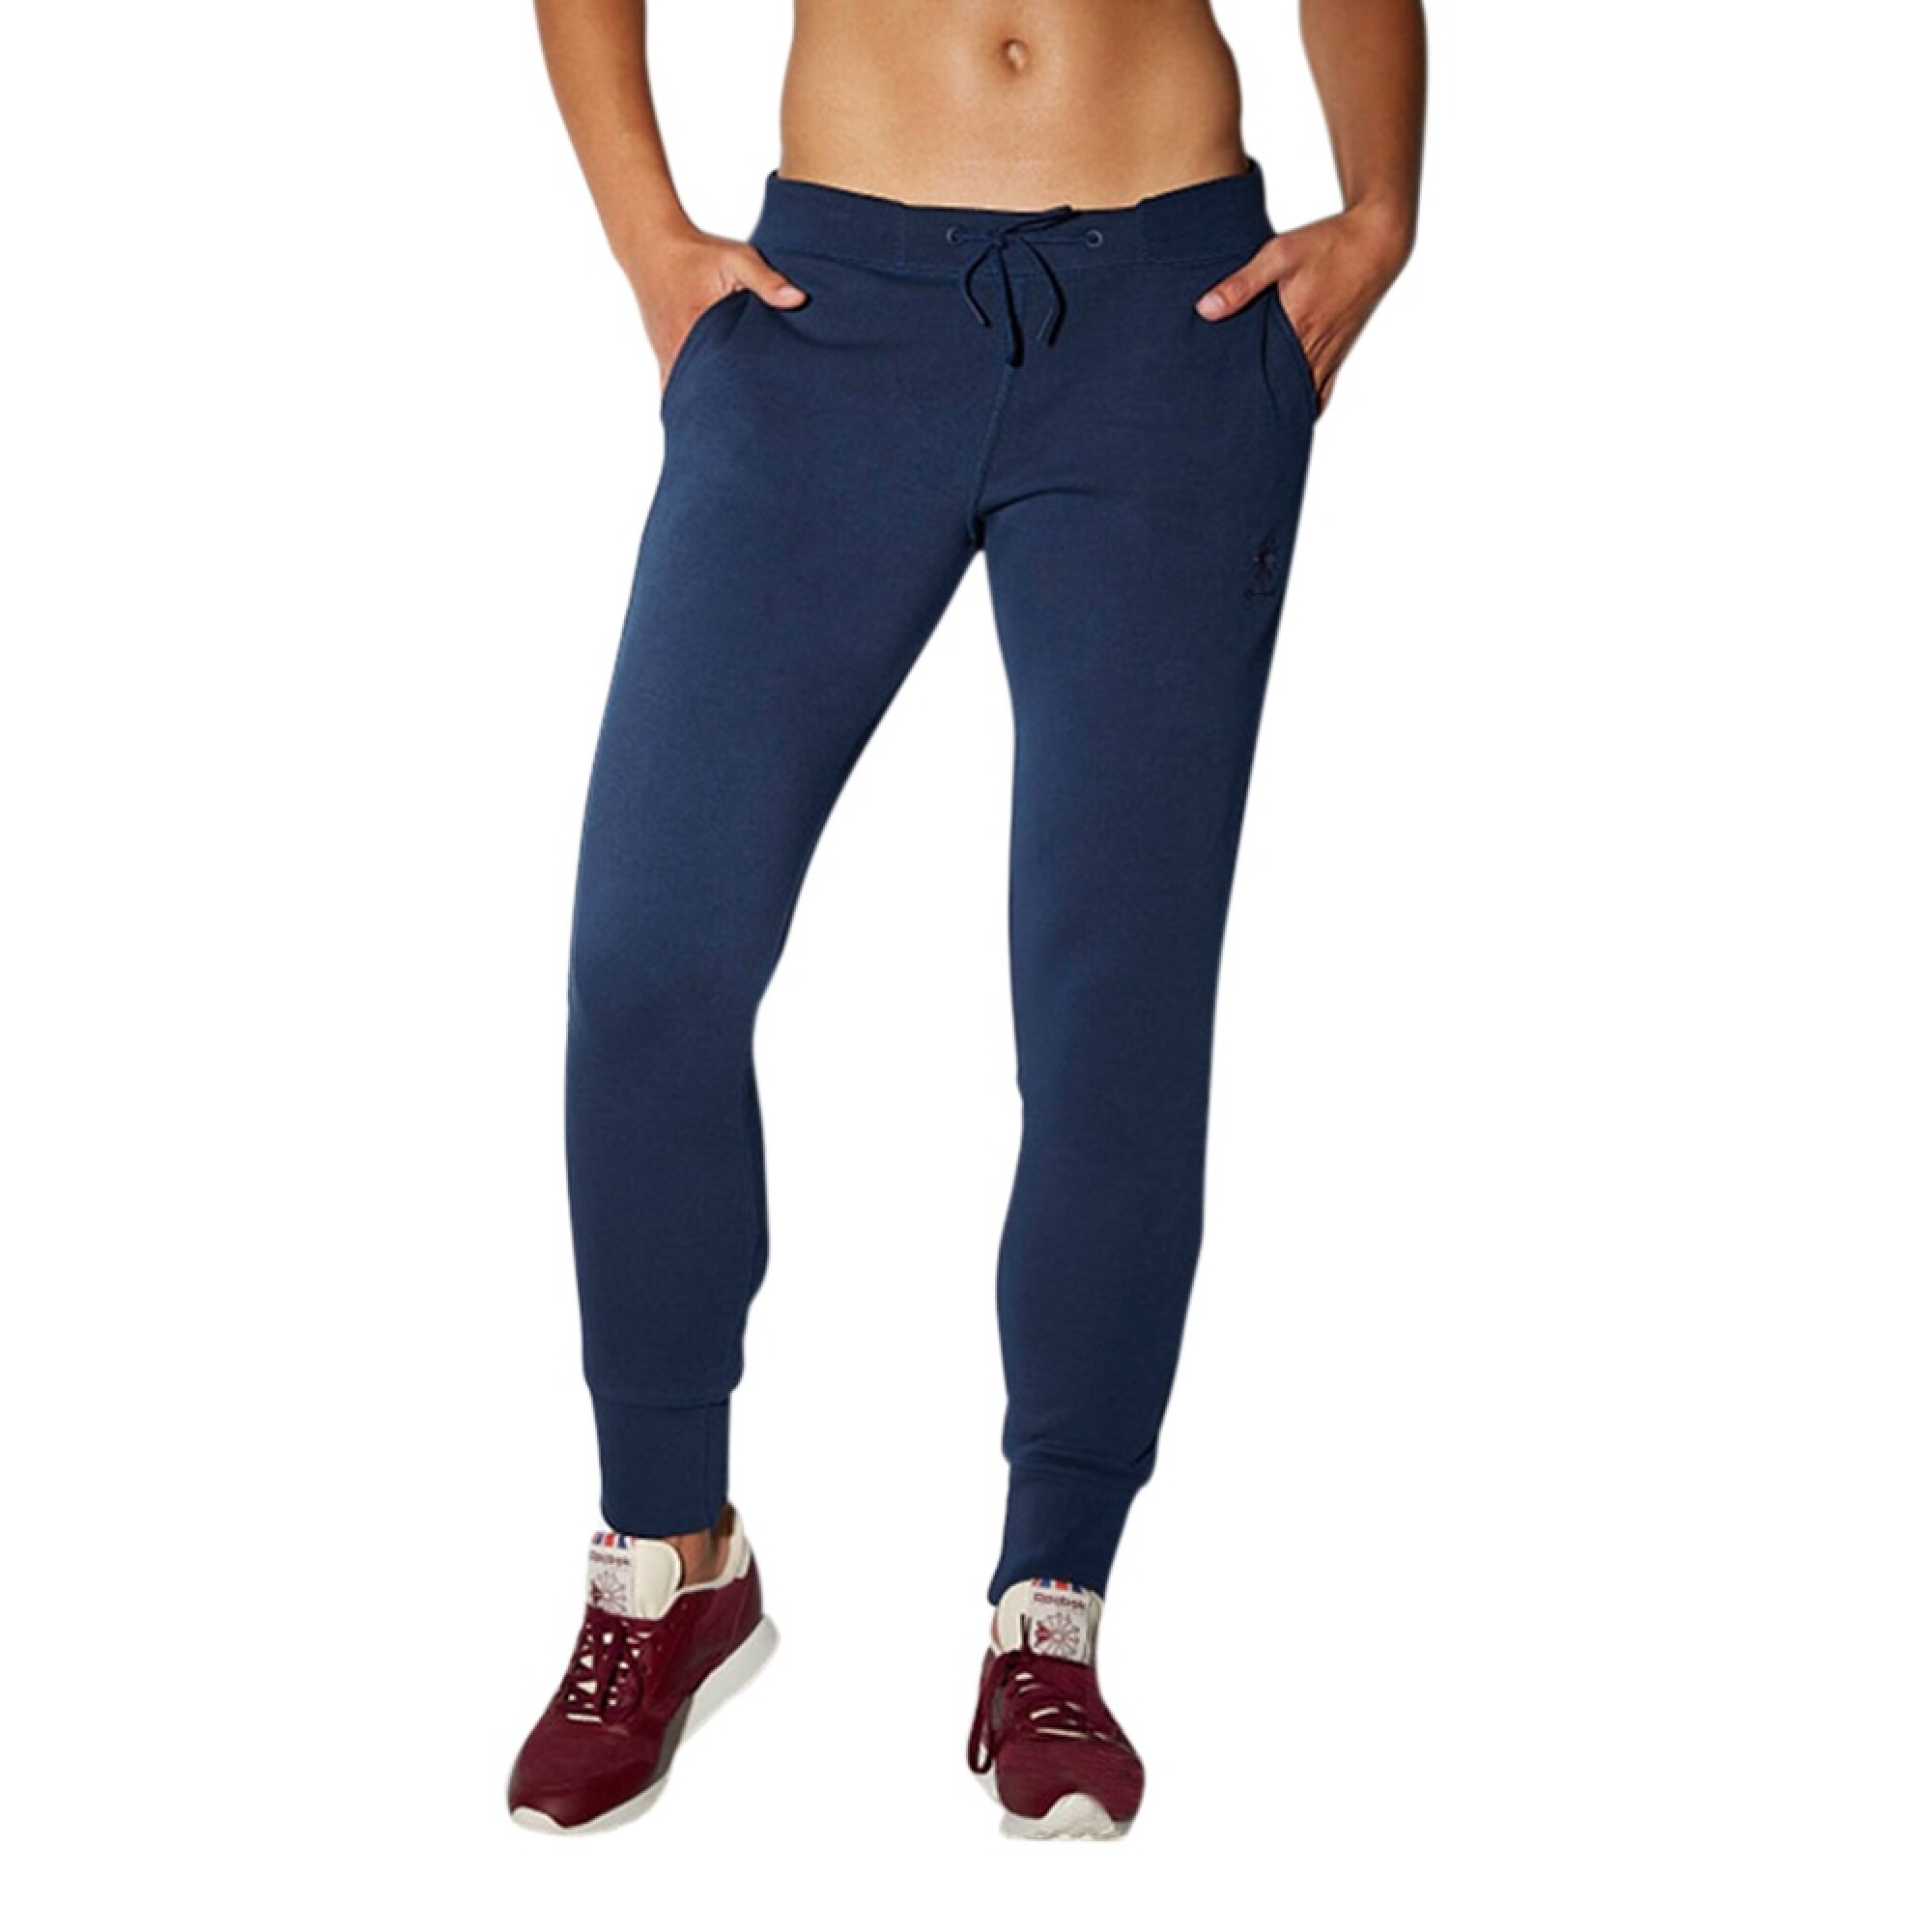 Pantalones cortos deportivos de cintura alta Fitness Yoga Mujeres Running  Joggings (Royal Blue) Tmvgtek Deportes Acuáticos